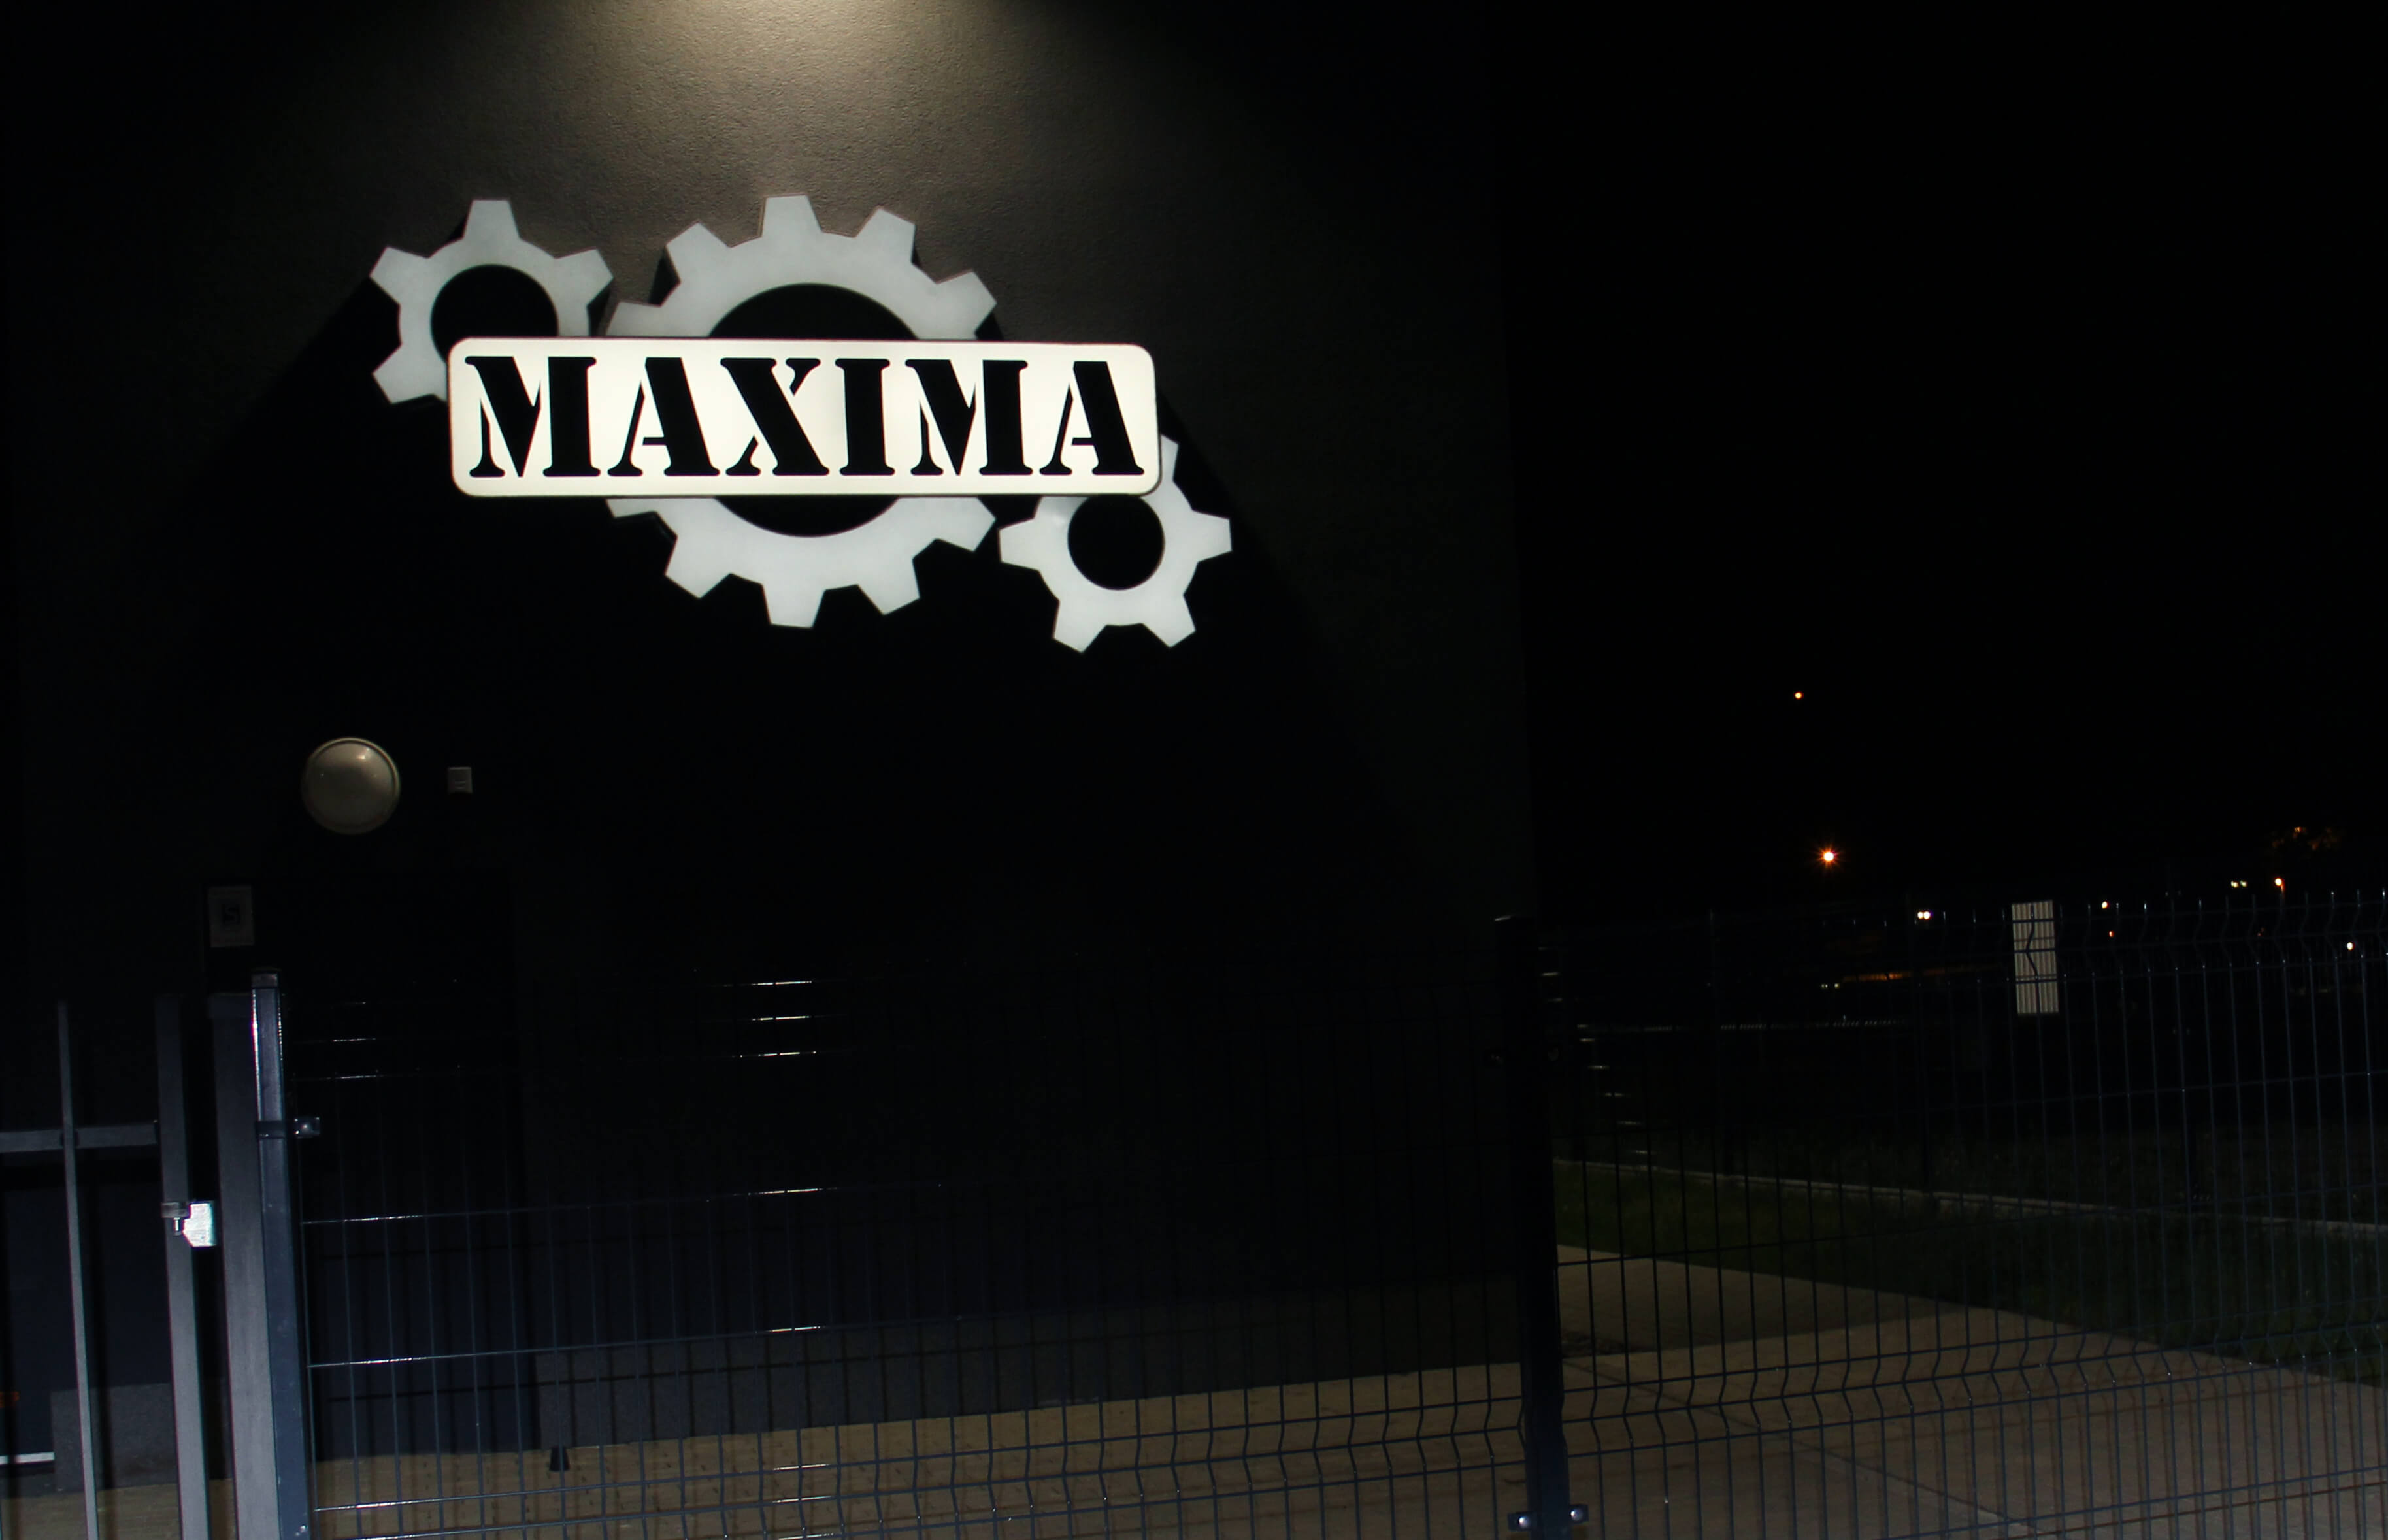 Máxima - Maxima - Panel mural LED con el logotipo de la empresa, fabricado en plexiglás